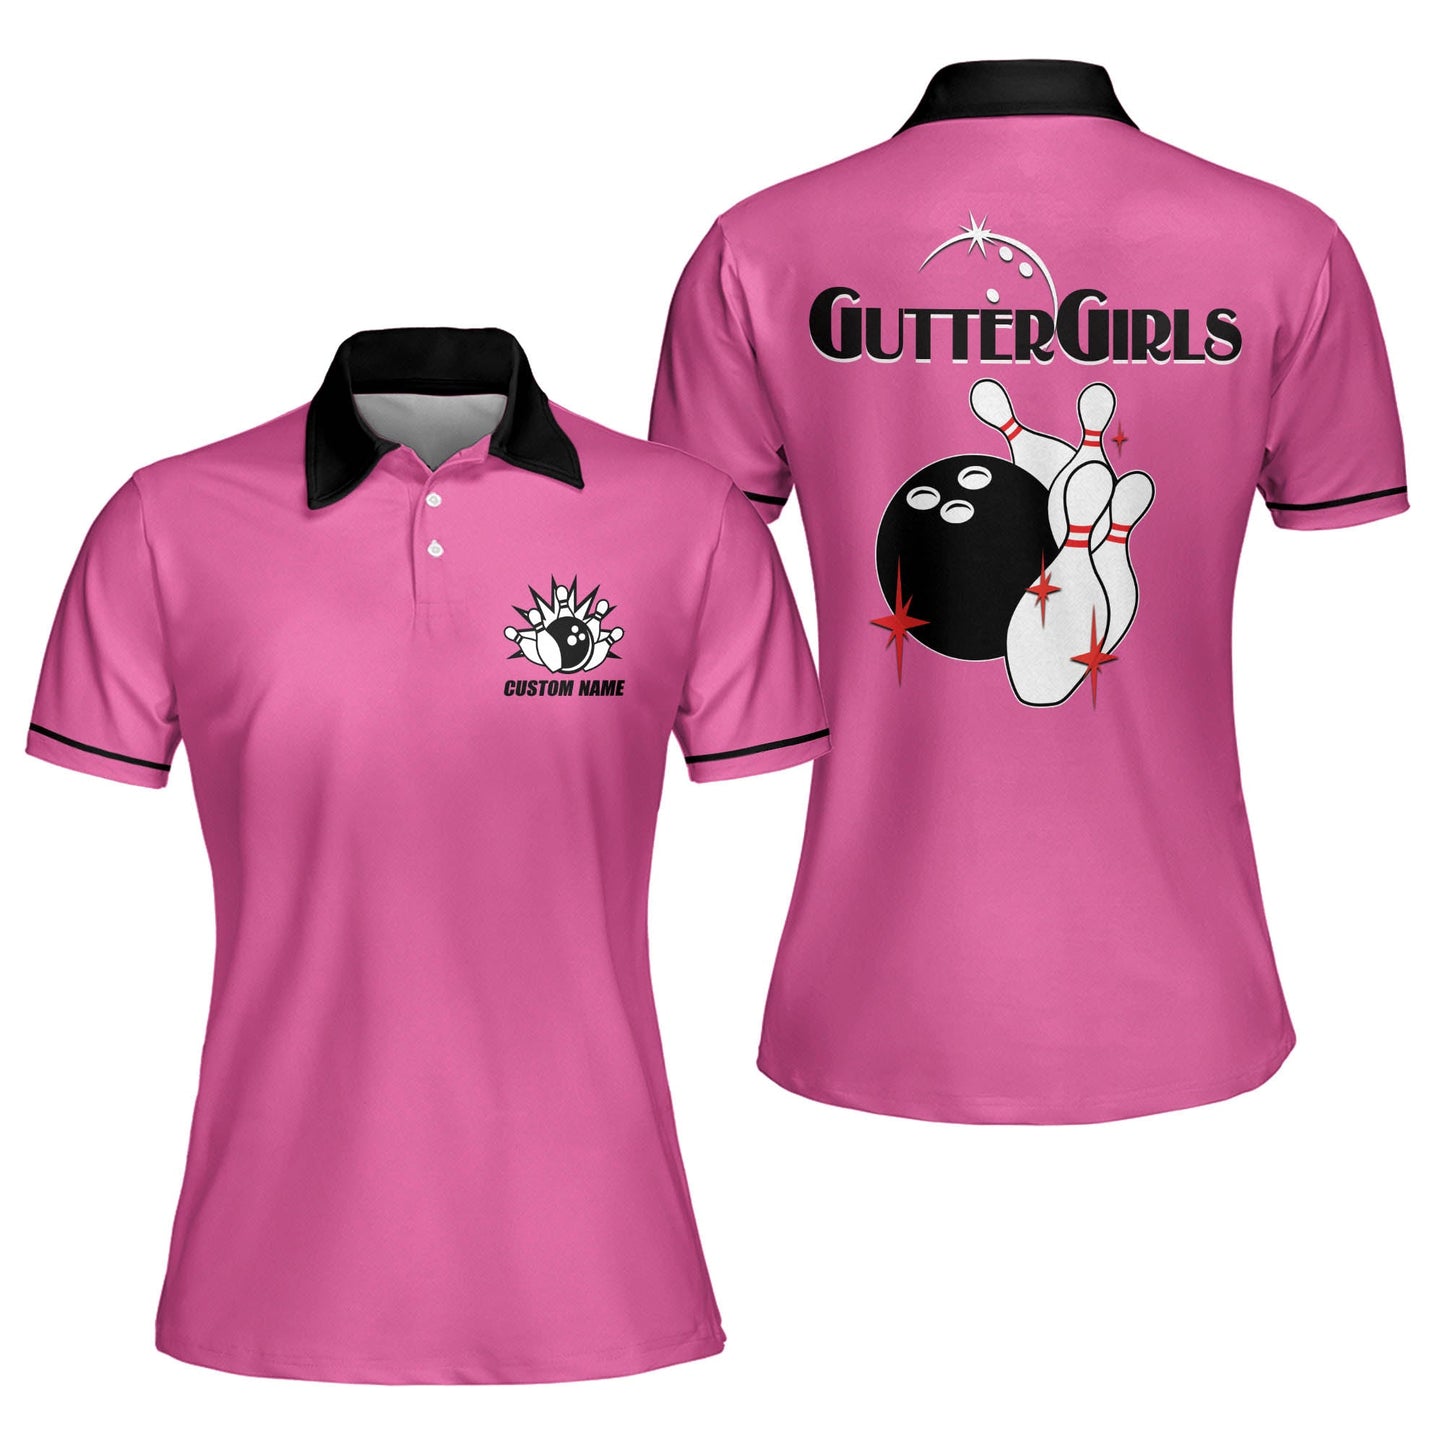 Custom Bowling Shirts For Women - Retro Womens Bowling Shirts - Funny Bowling Shirts For Women - Gutter Girls Pink Bowling Polo Shirts BW0068